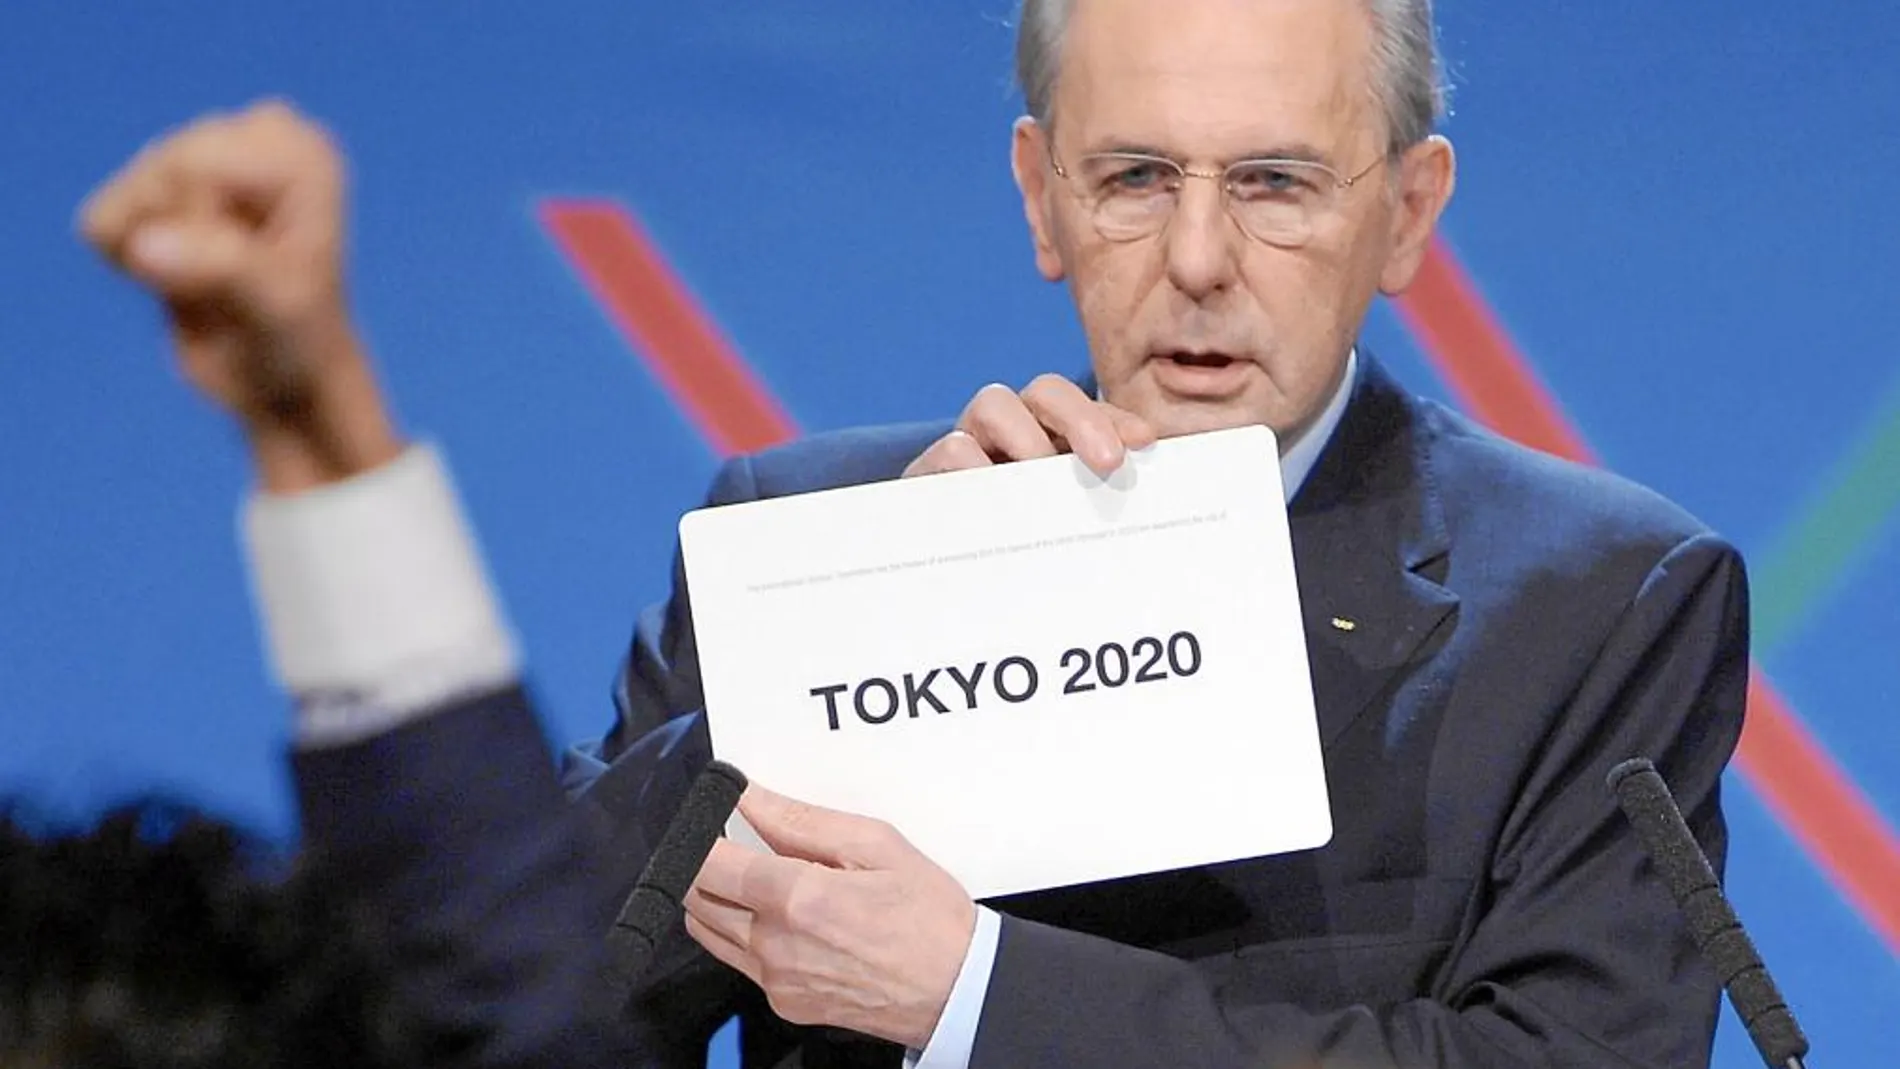 El presidente del COI, Jacques Rogge, muestra en Buenos Aires el nombre de la ciudad que ganó la votación y que albergará los Juegos Olímpicos de verano en 2020: Tokio